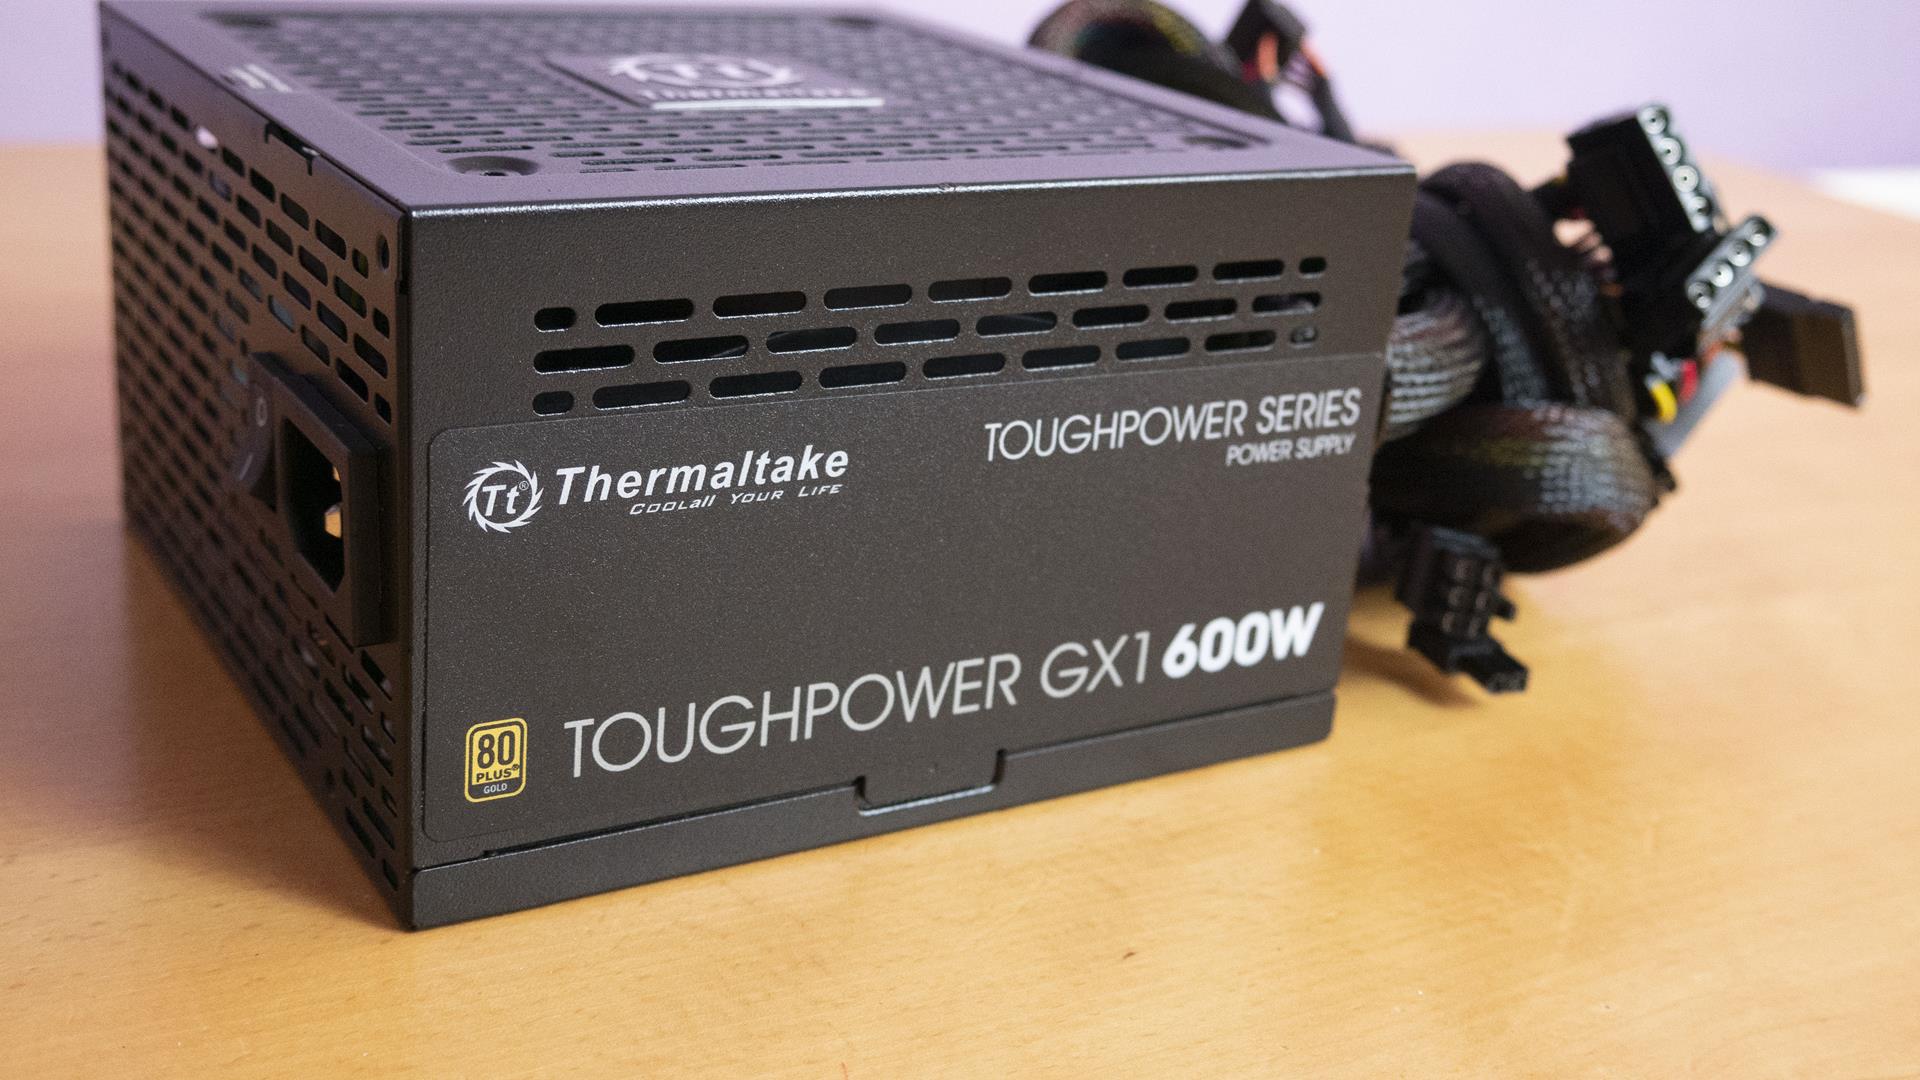 Toughpower GX1 600W PSU Review 3 Copy 1